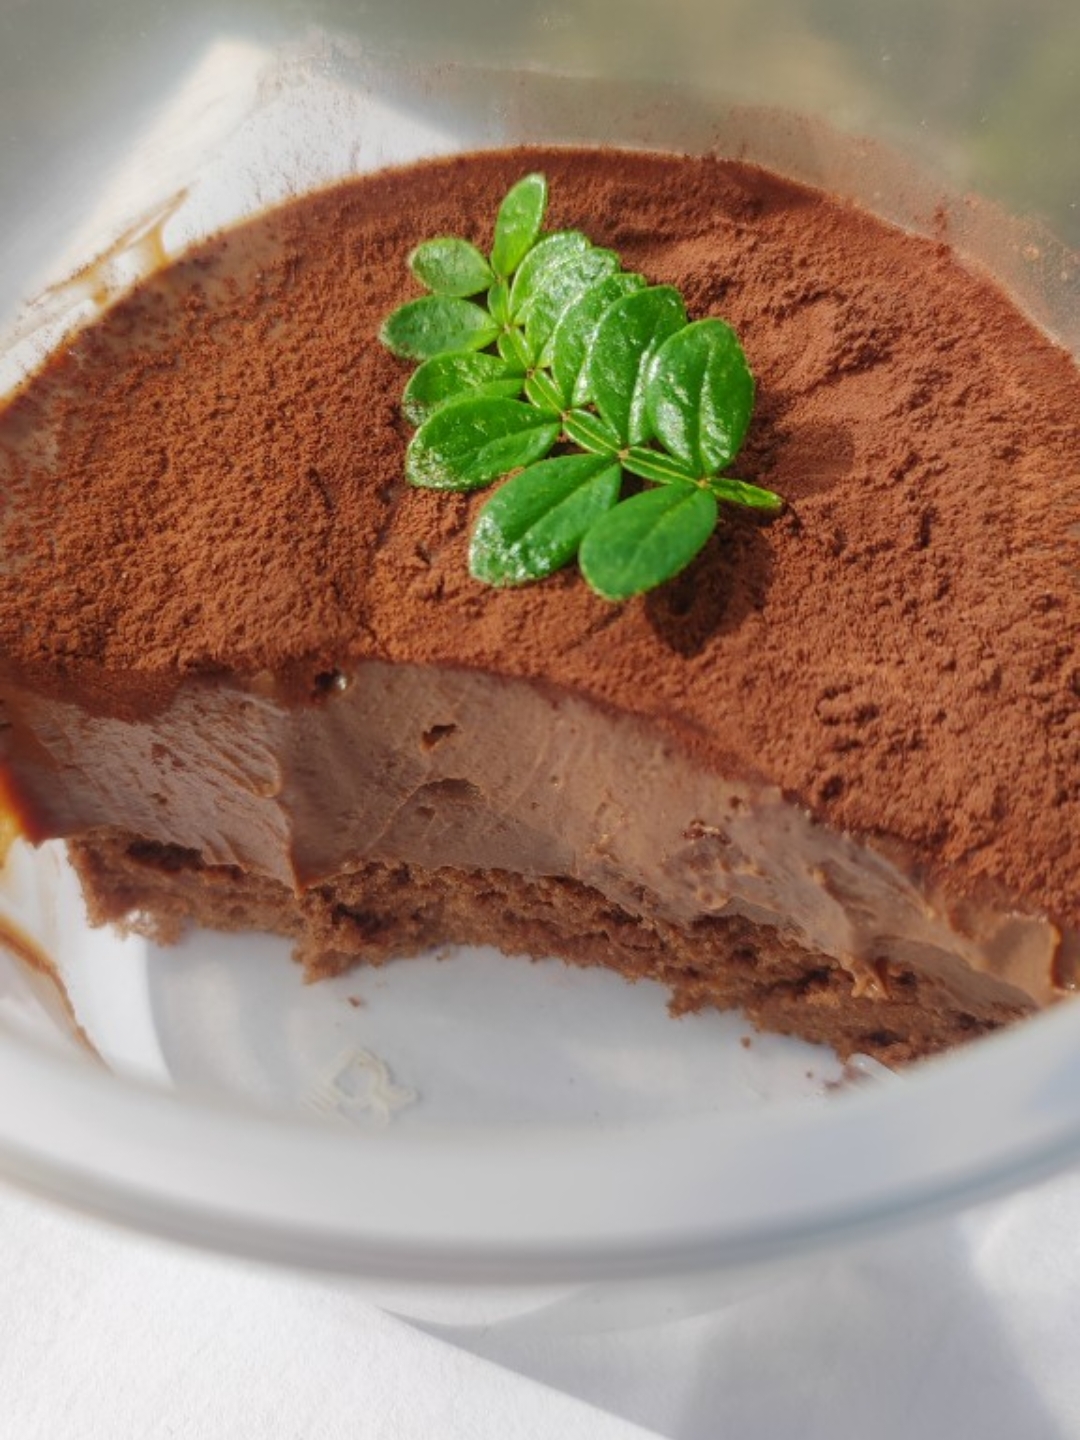 我的镇店之宝—巧克力熔岩蛋糕配方分享